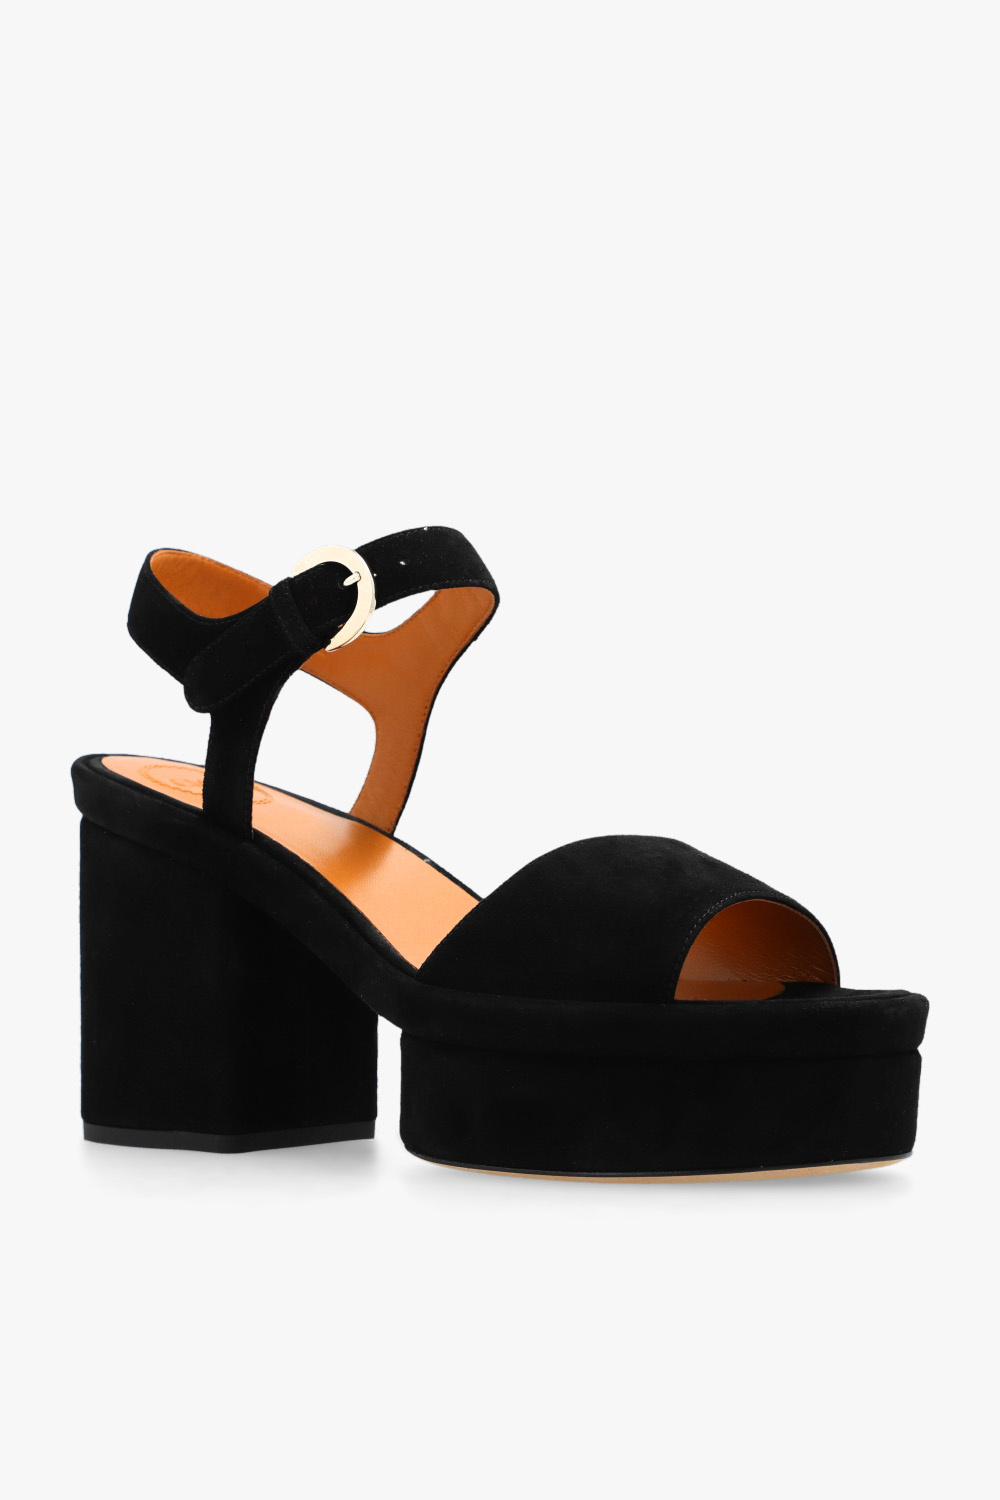 Chloé ‘Odina’ heeled sandals | Women's Shoes | Vitkac